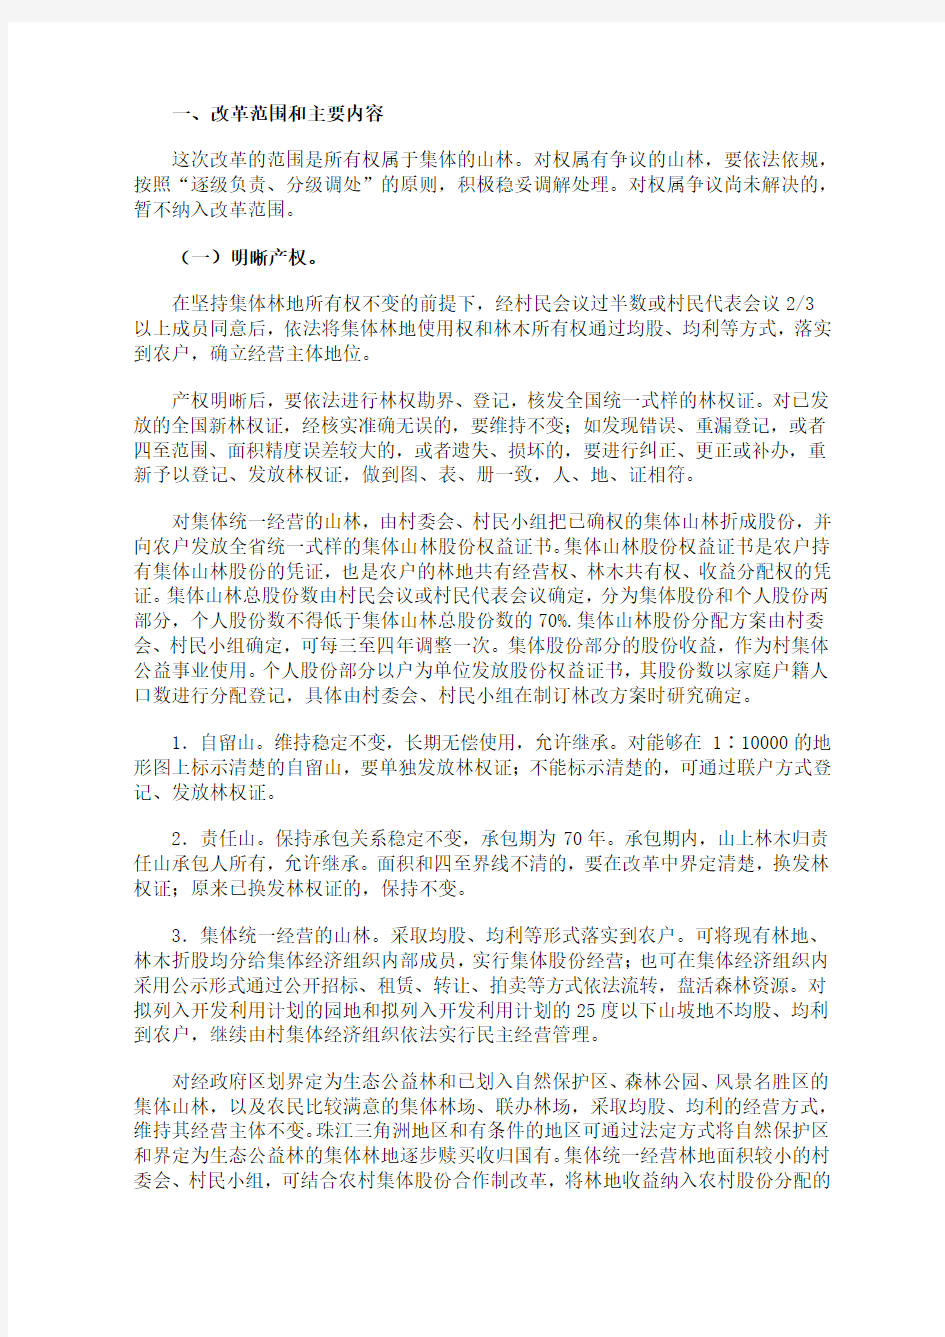 广东省全面推进集体林权制度改革工作方案